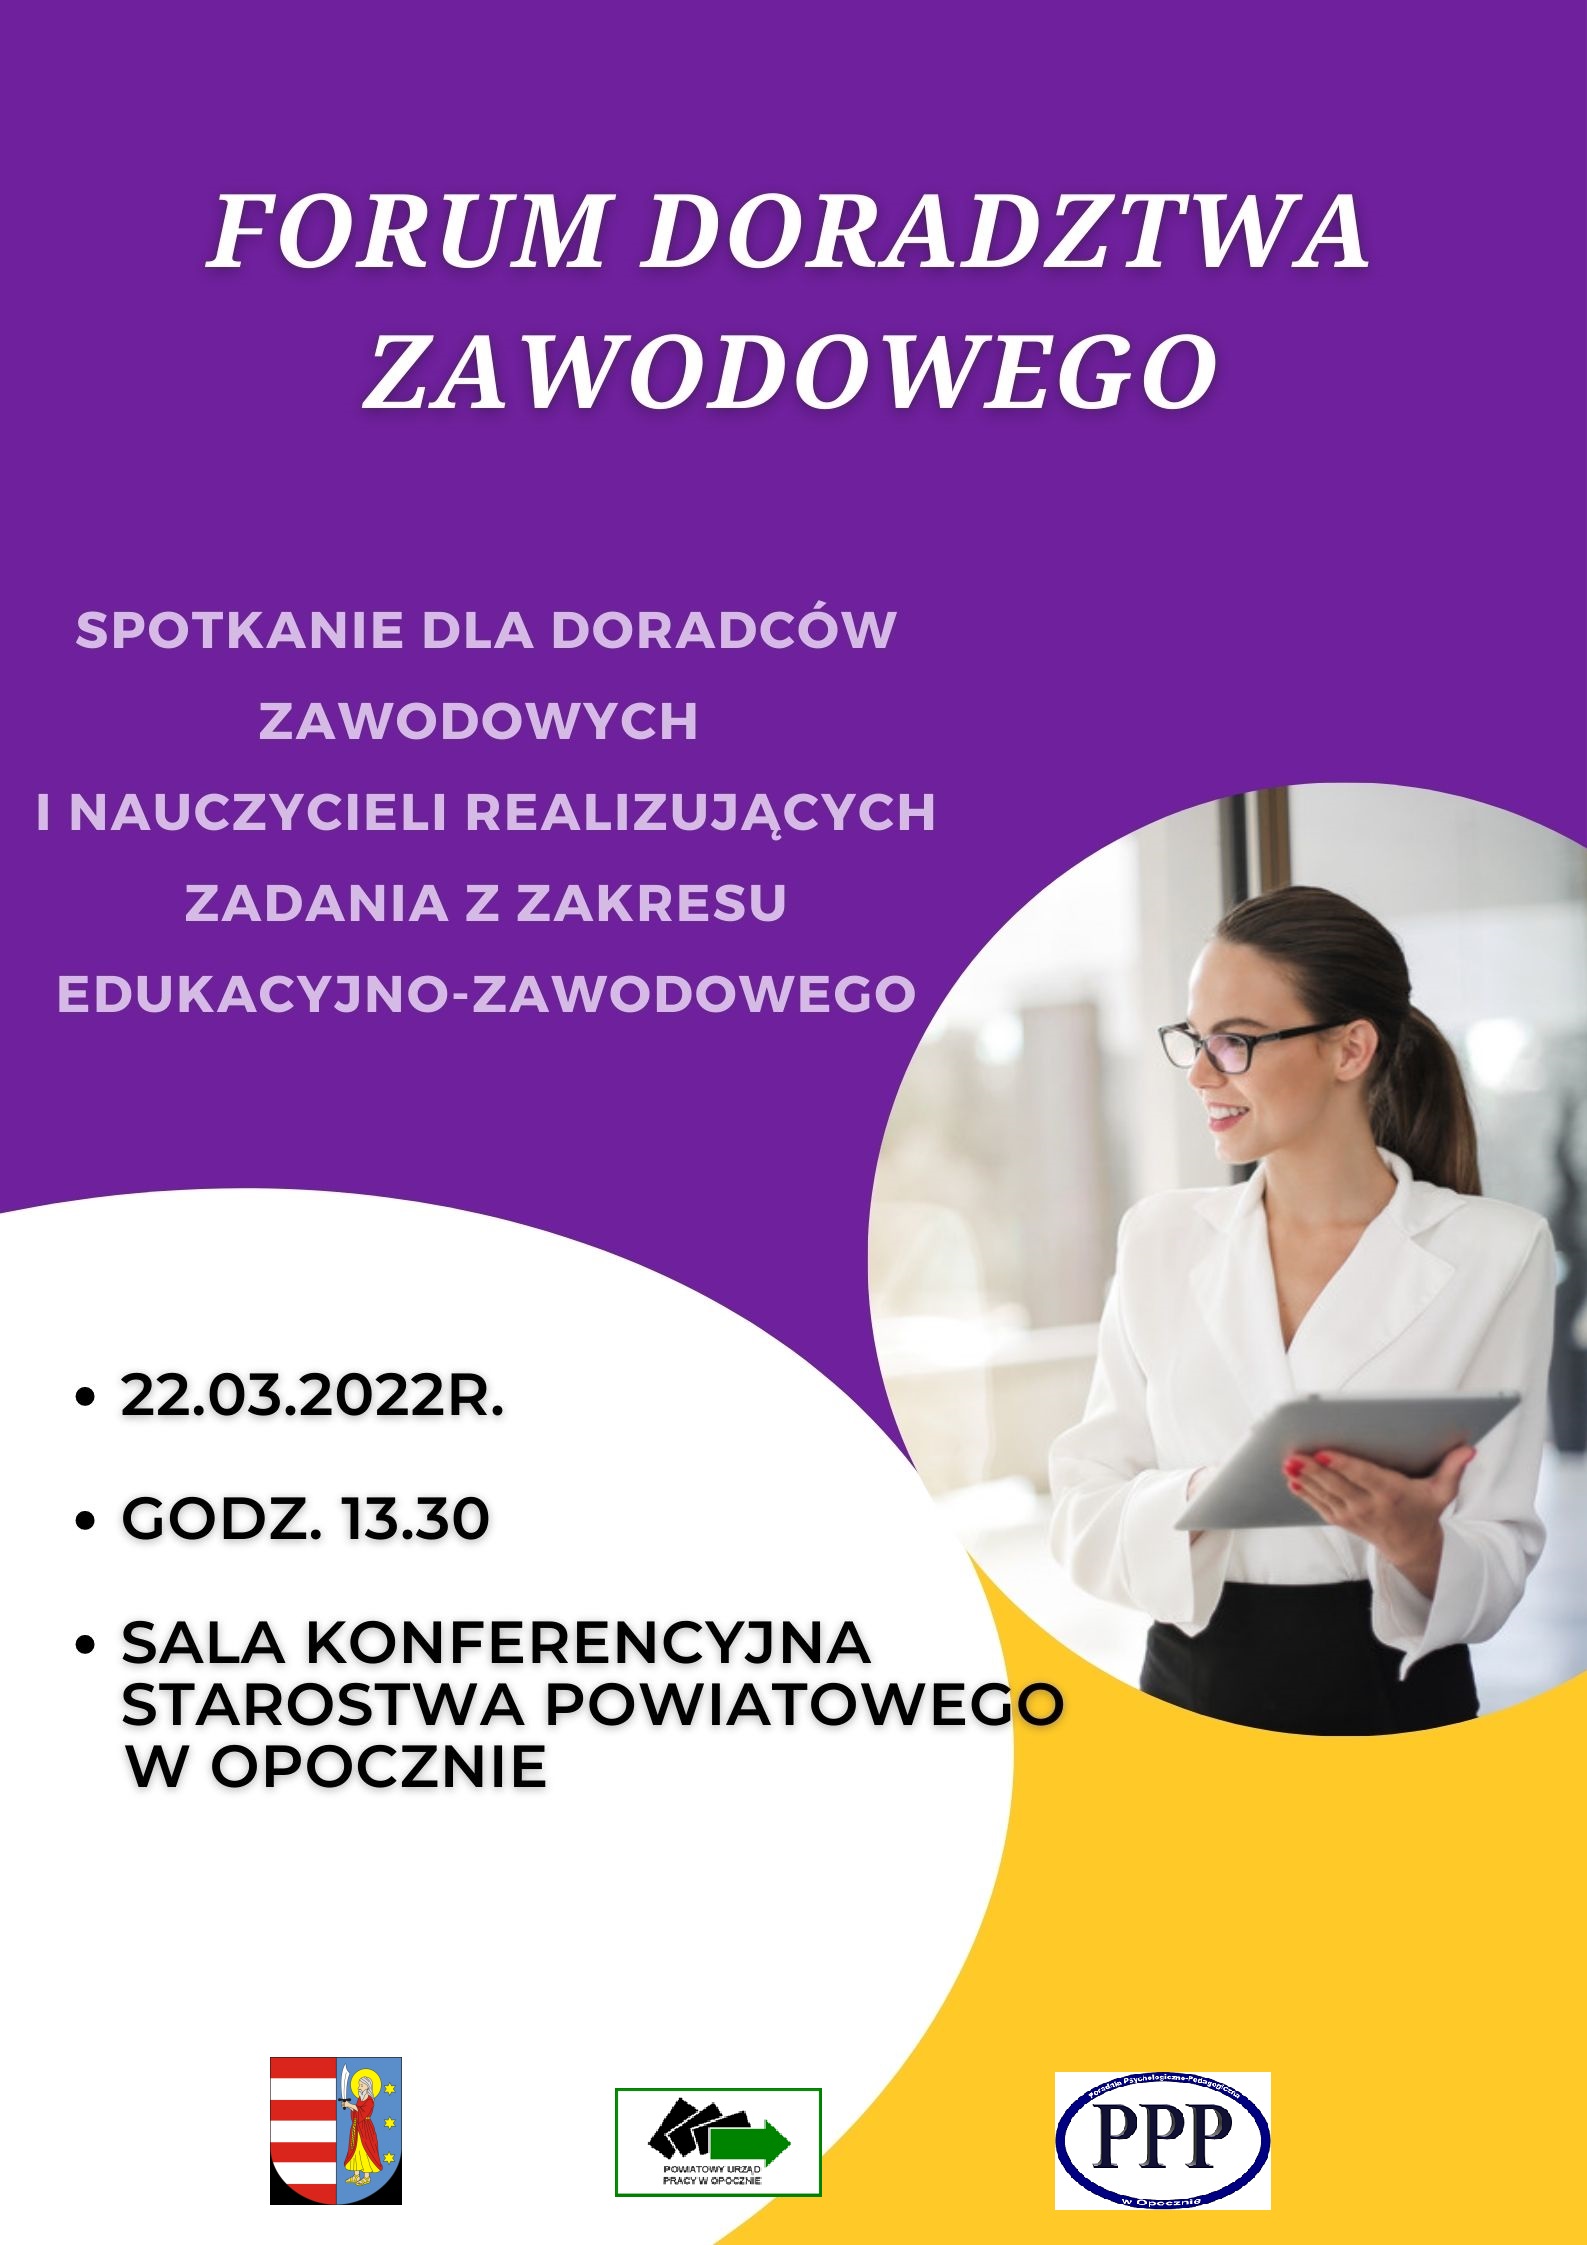 Plakat informacyjny dotyczący Forum Doradztwa Zawodowego